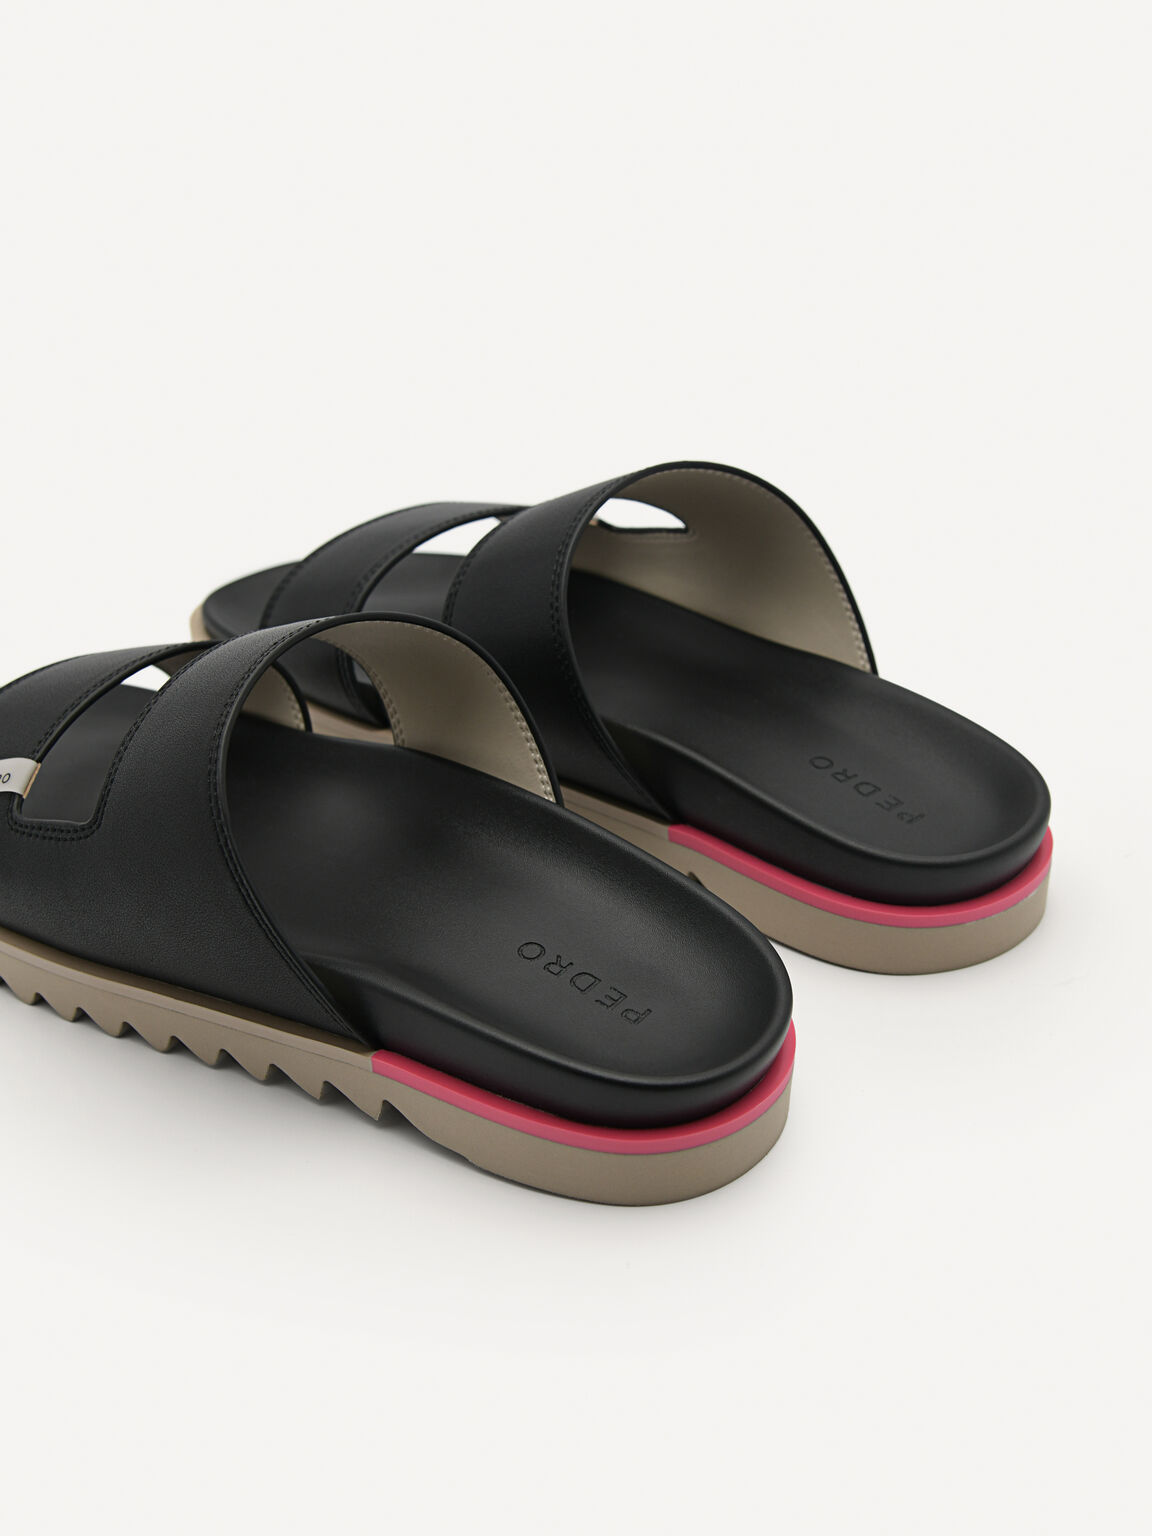 Owen Slide Sandals, Black